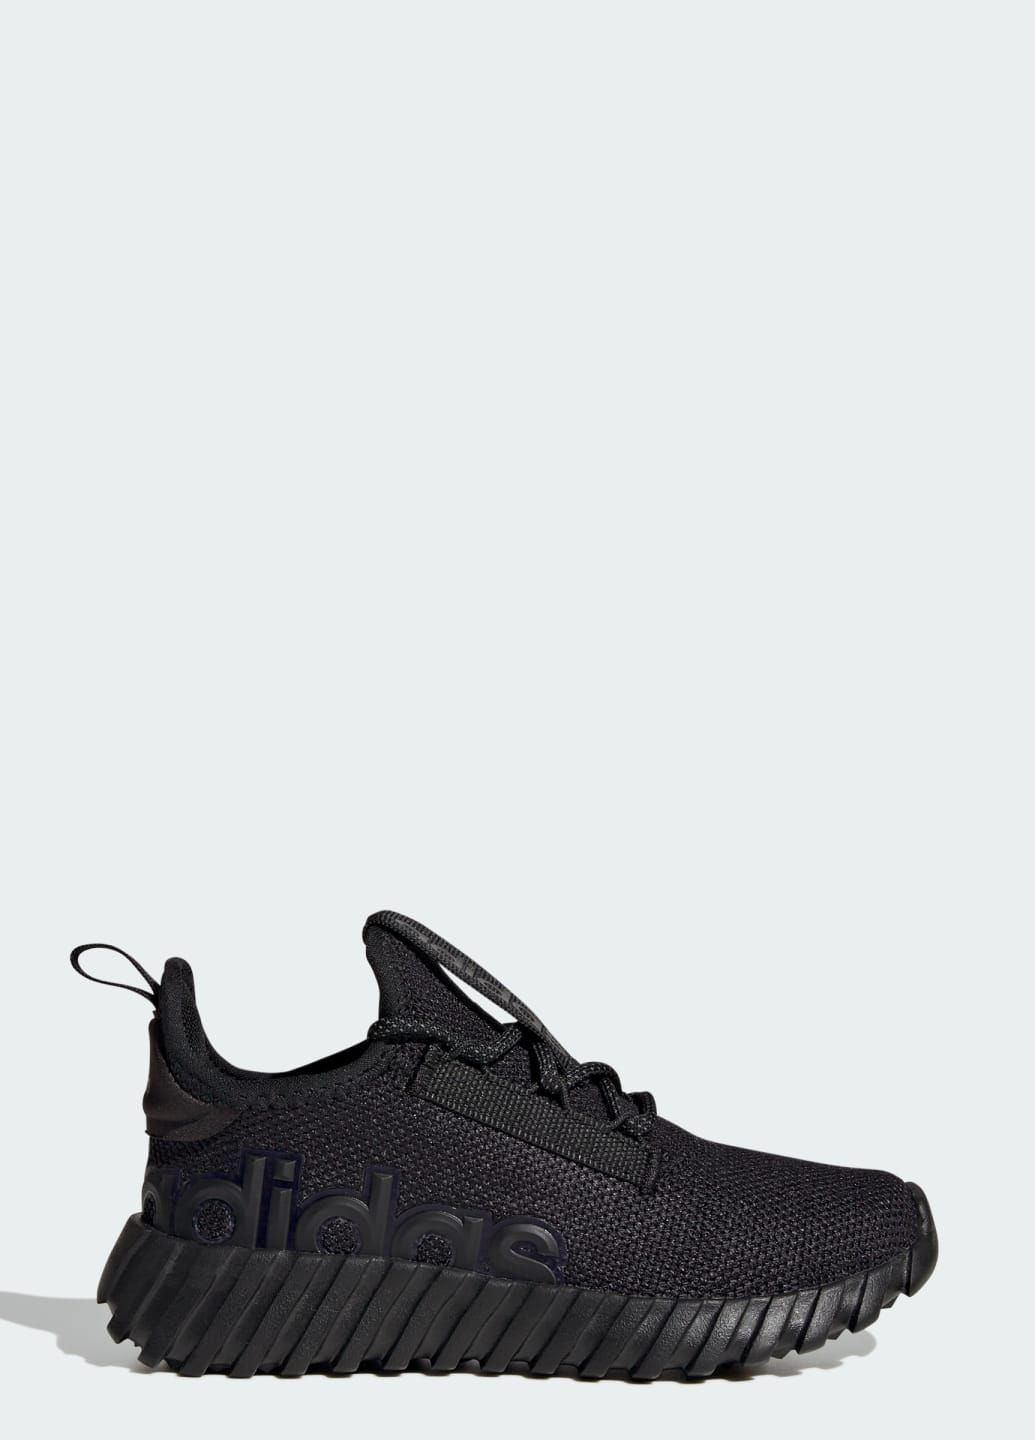 Черные всесезонные кроссовки kaptir 3.0 kids adidas